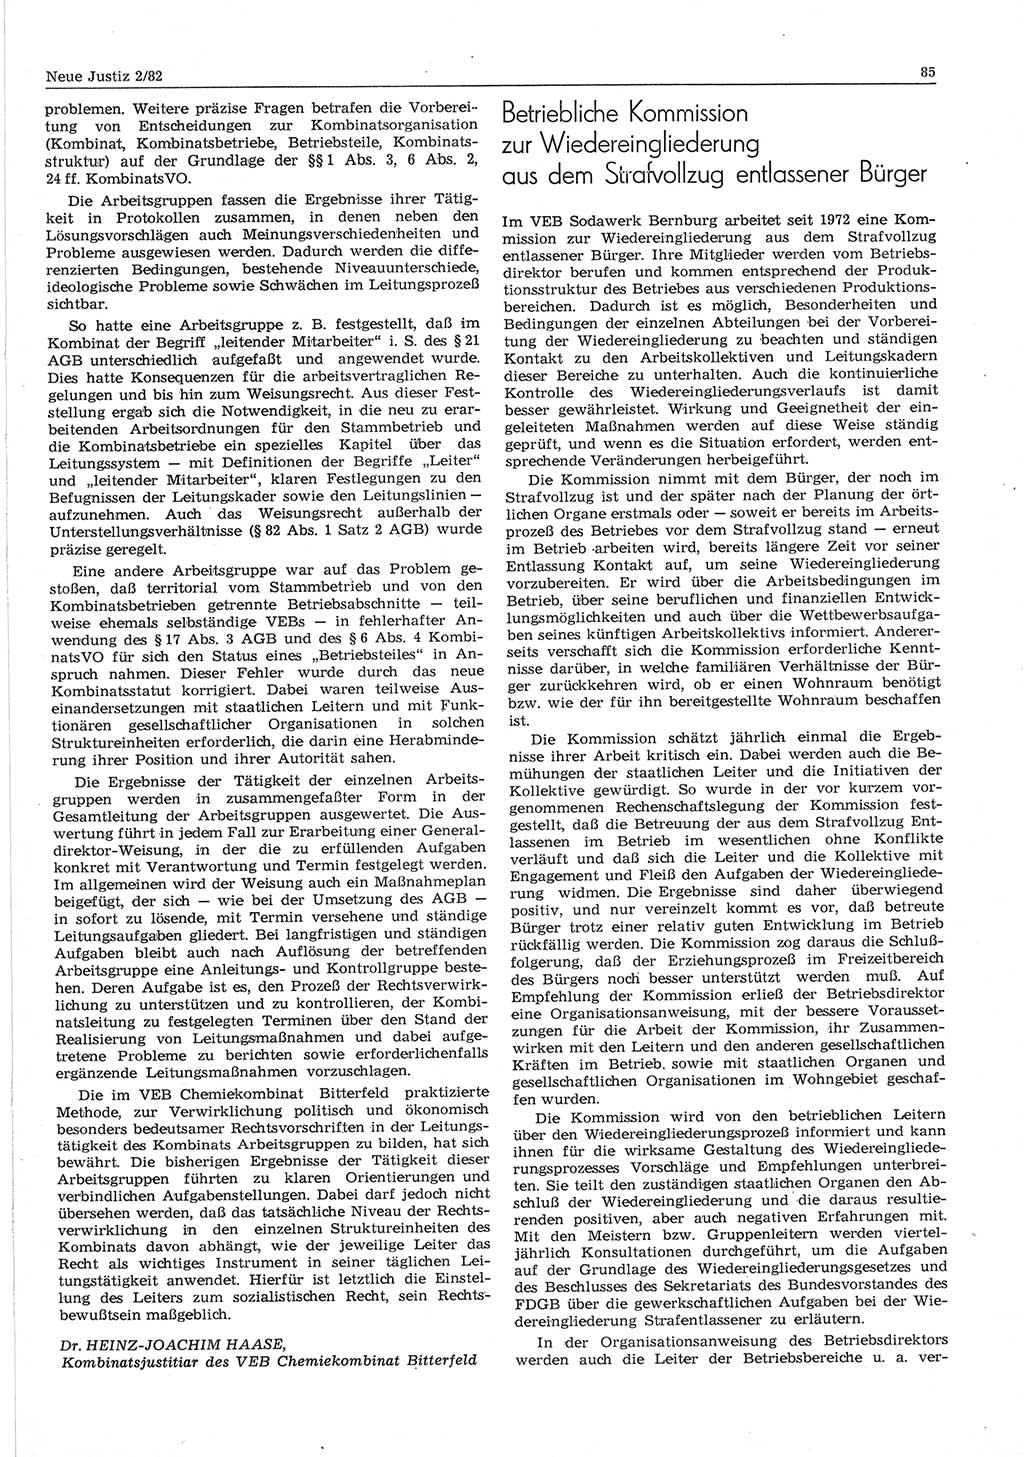 Neue Justiz (NJ), Zeitschrift für sozialistisches Recht und Gesetzlichkeit [Deutsche Demokratische Republik (DDR)], 36. Jahrgang 1982, Seite 85 (NJ DDR 1982, S. 85)